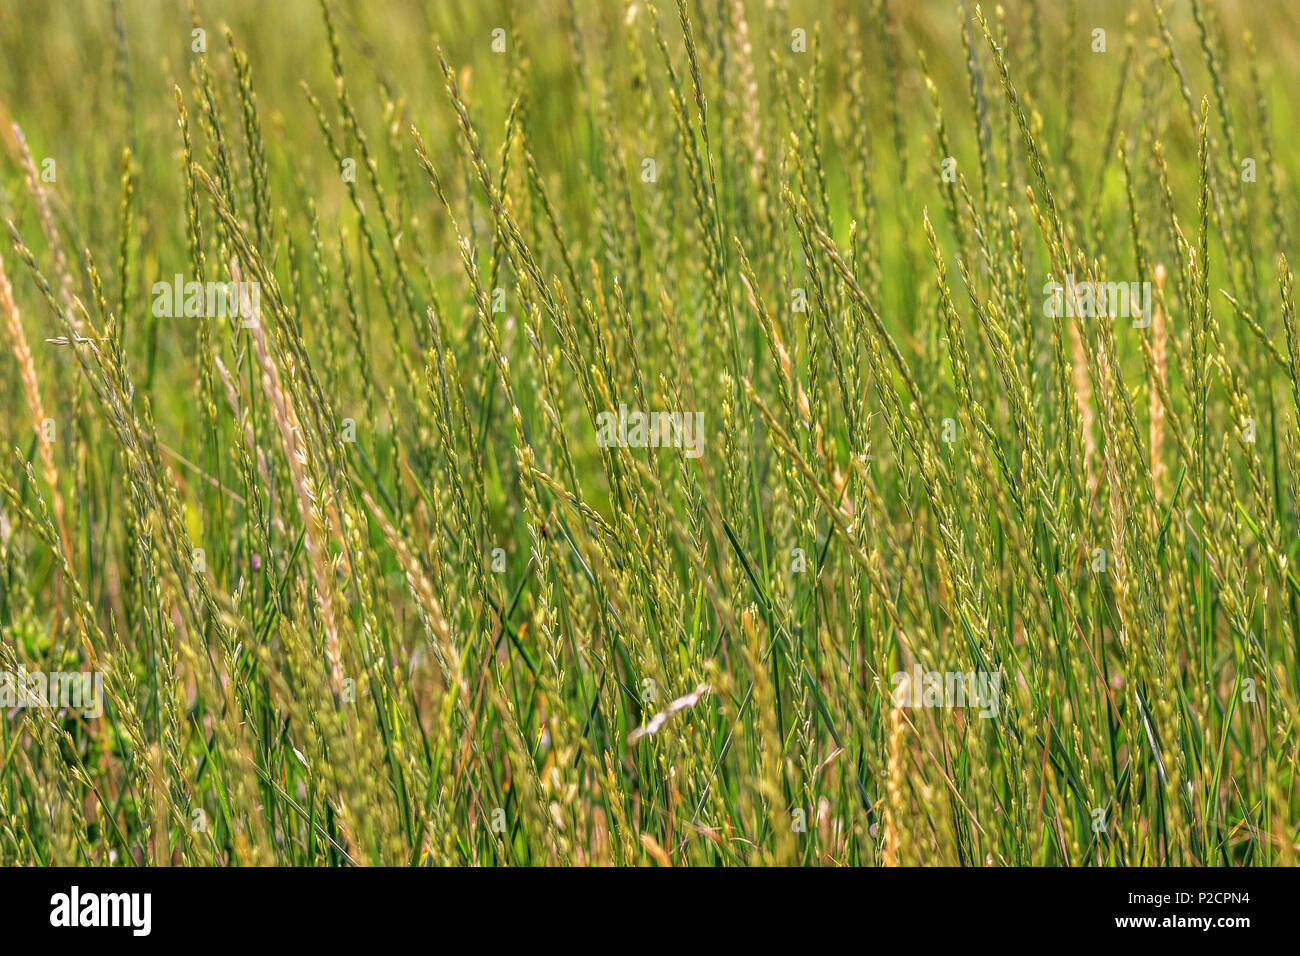 Sfondo immagine spikelets verde della natura selvaggia erba Foto Stock